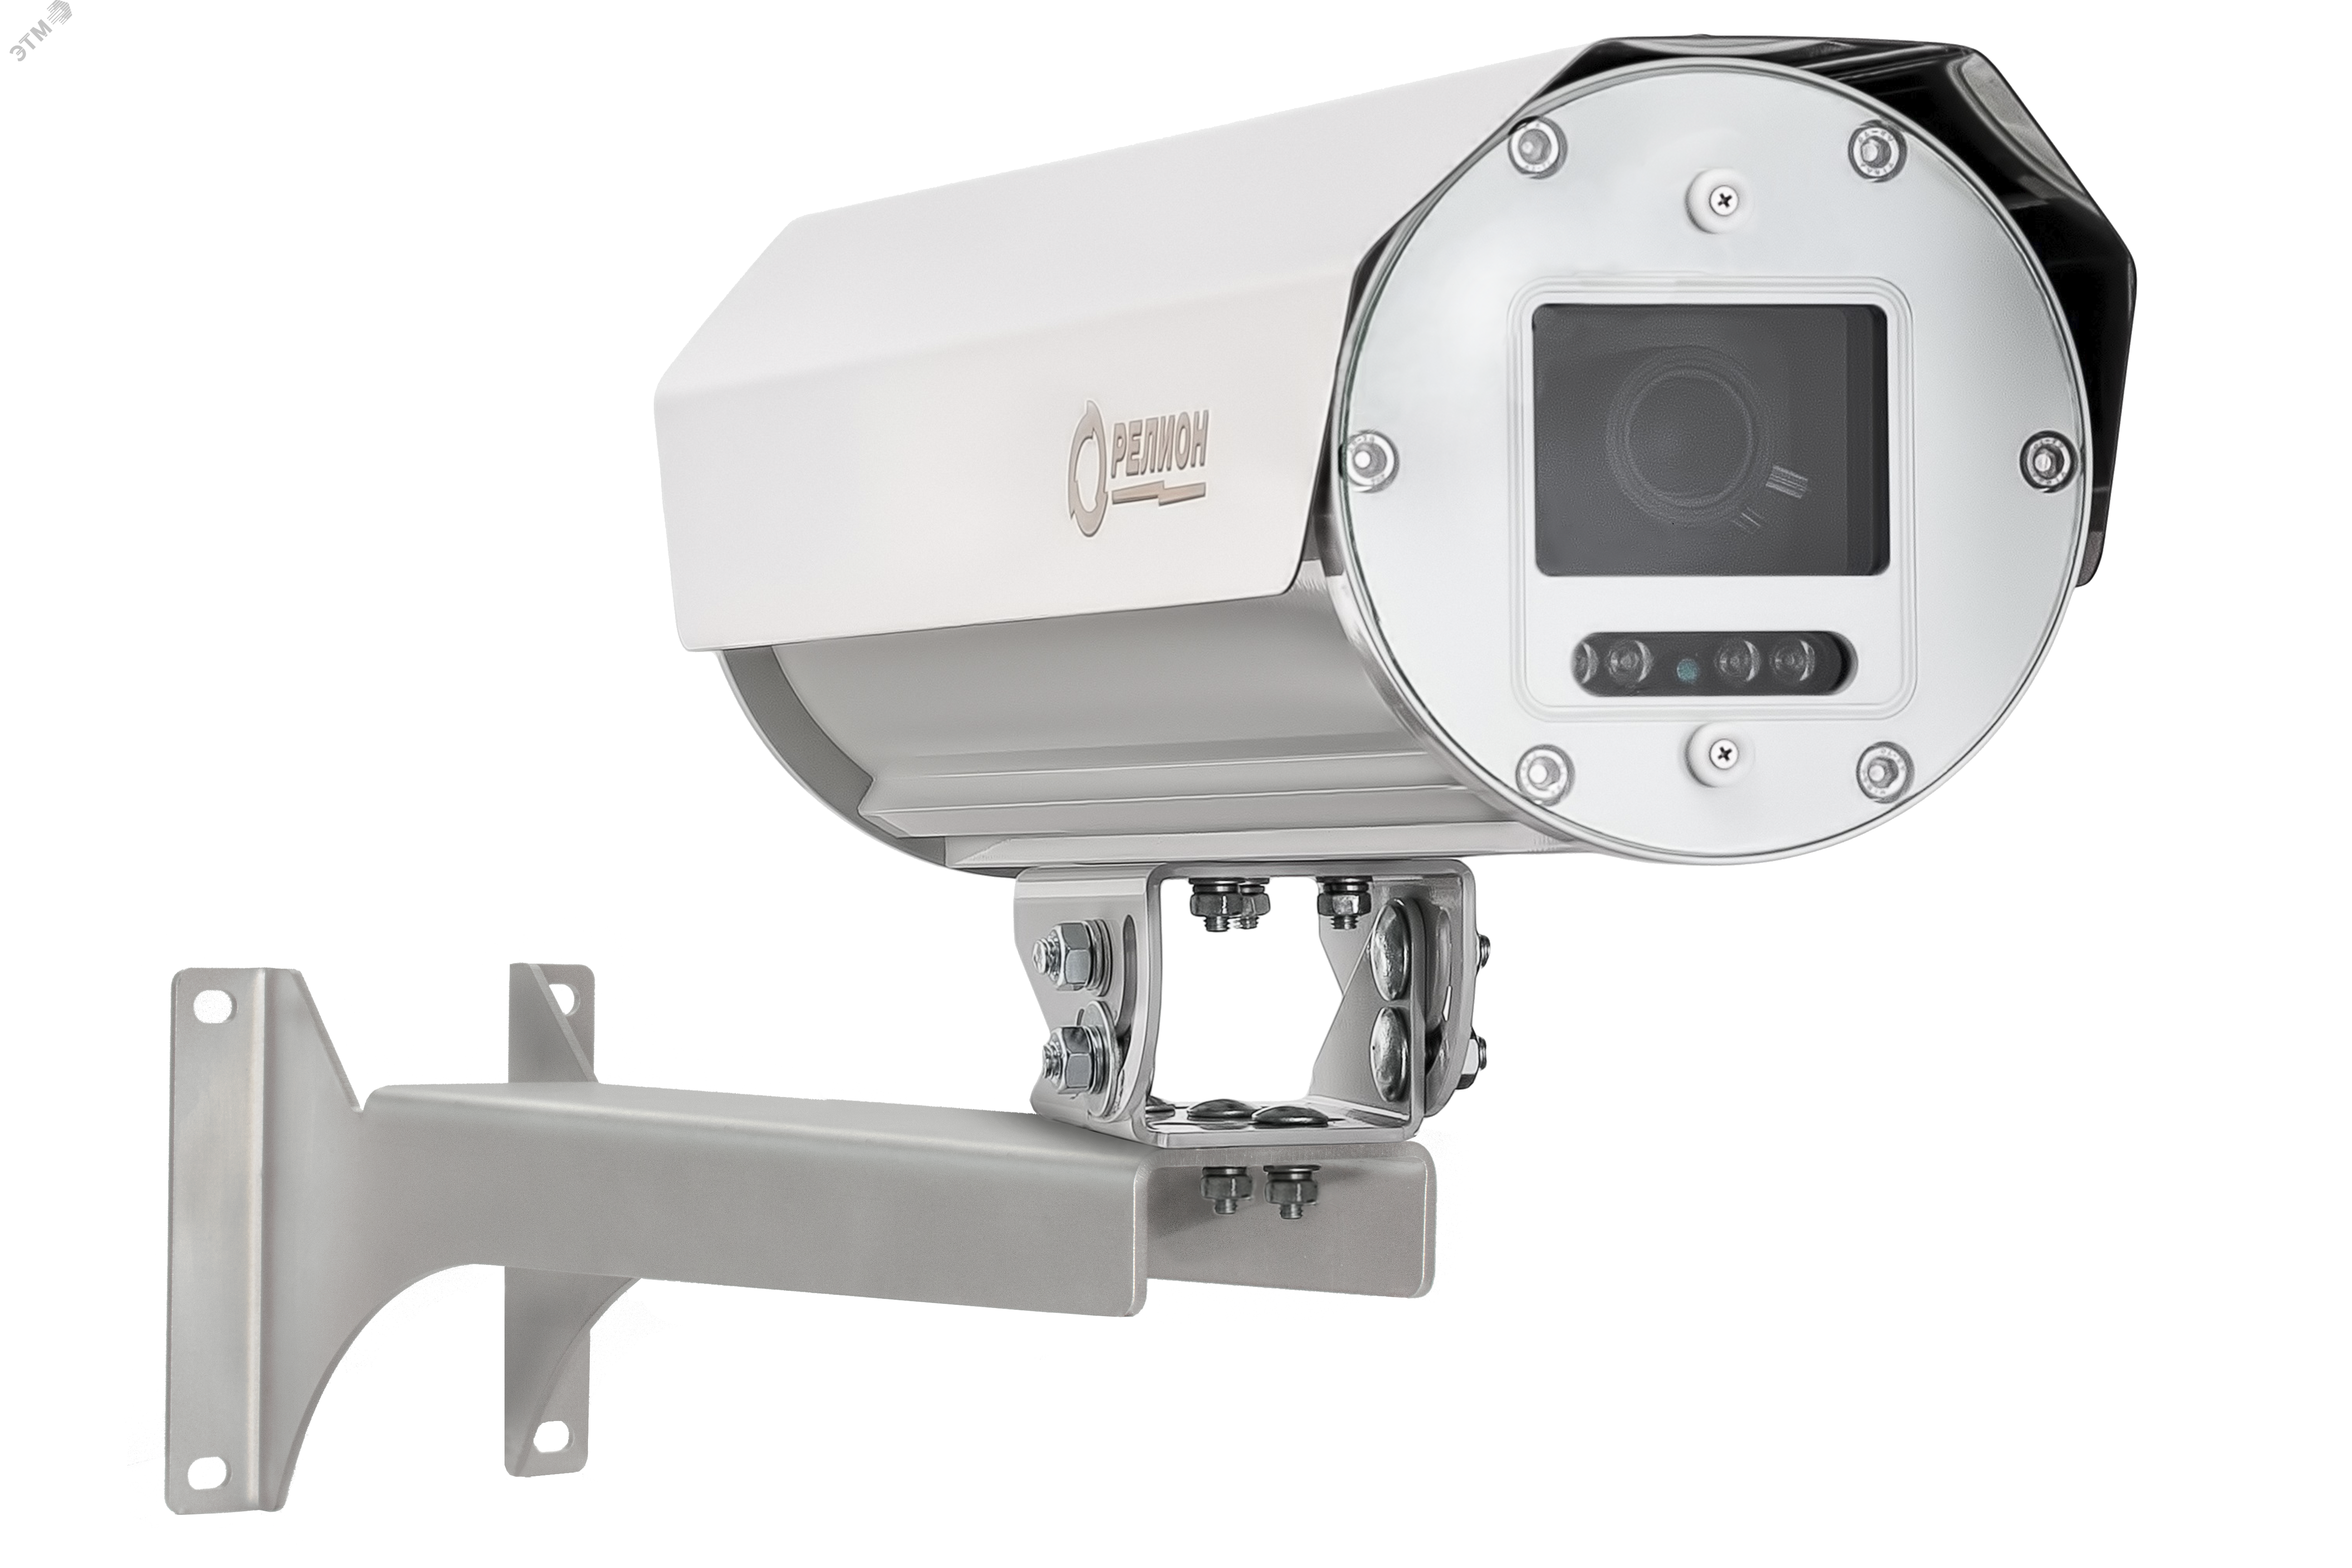 Термокожухи с встроенным ИК-прожектором -ТКВ-300-П-А-ИК исп. 08 для аналоговых и IP видеокамер из алюминиевого сплава. 00000008374 Релион